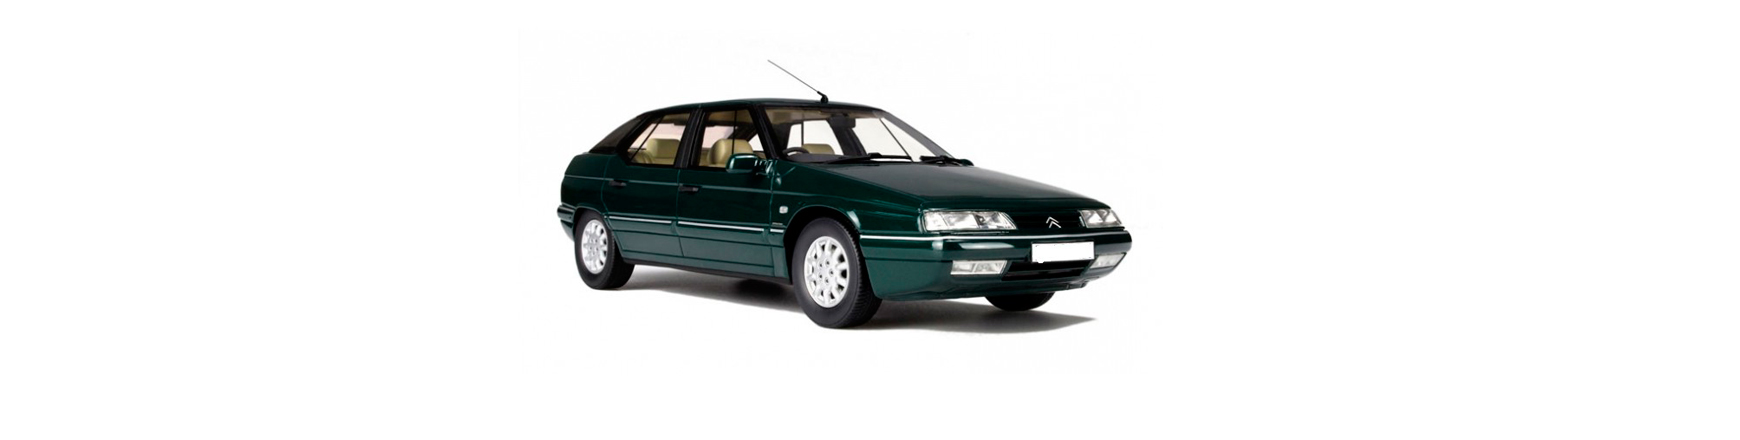 Recambios de Citroën Xm al mejor precio. Modelo de 1986 al 2000.